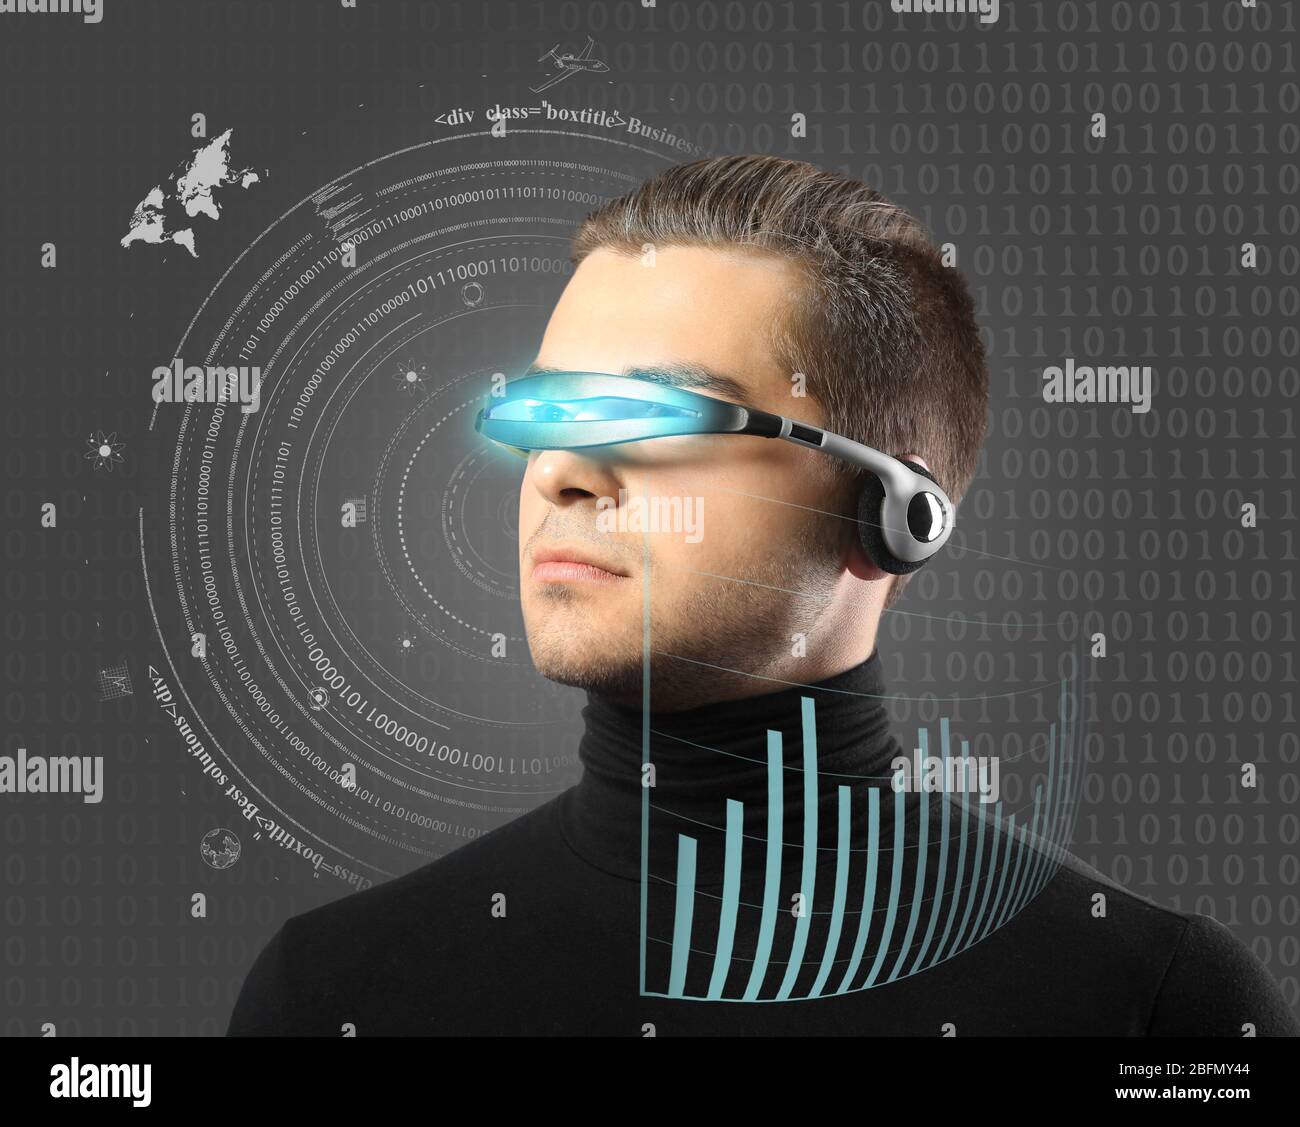 Man with futuristic glasses - future concept Stock Photo - Alamy